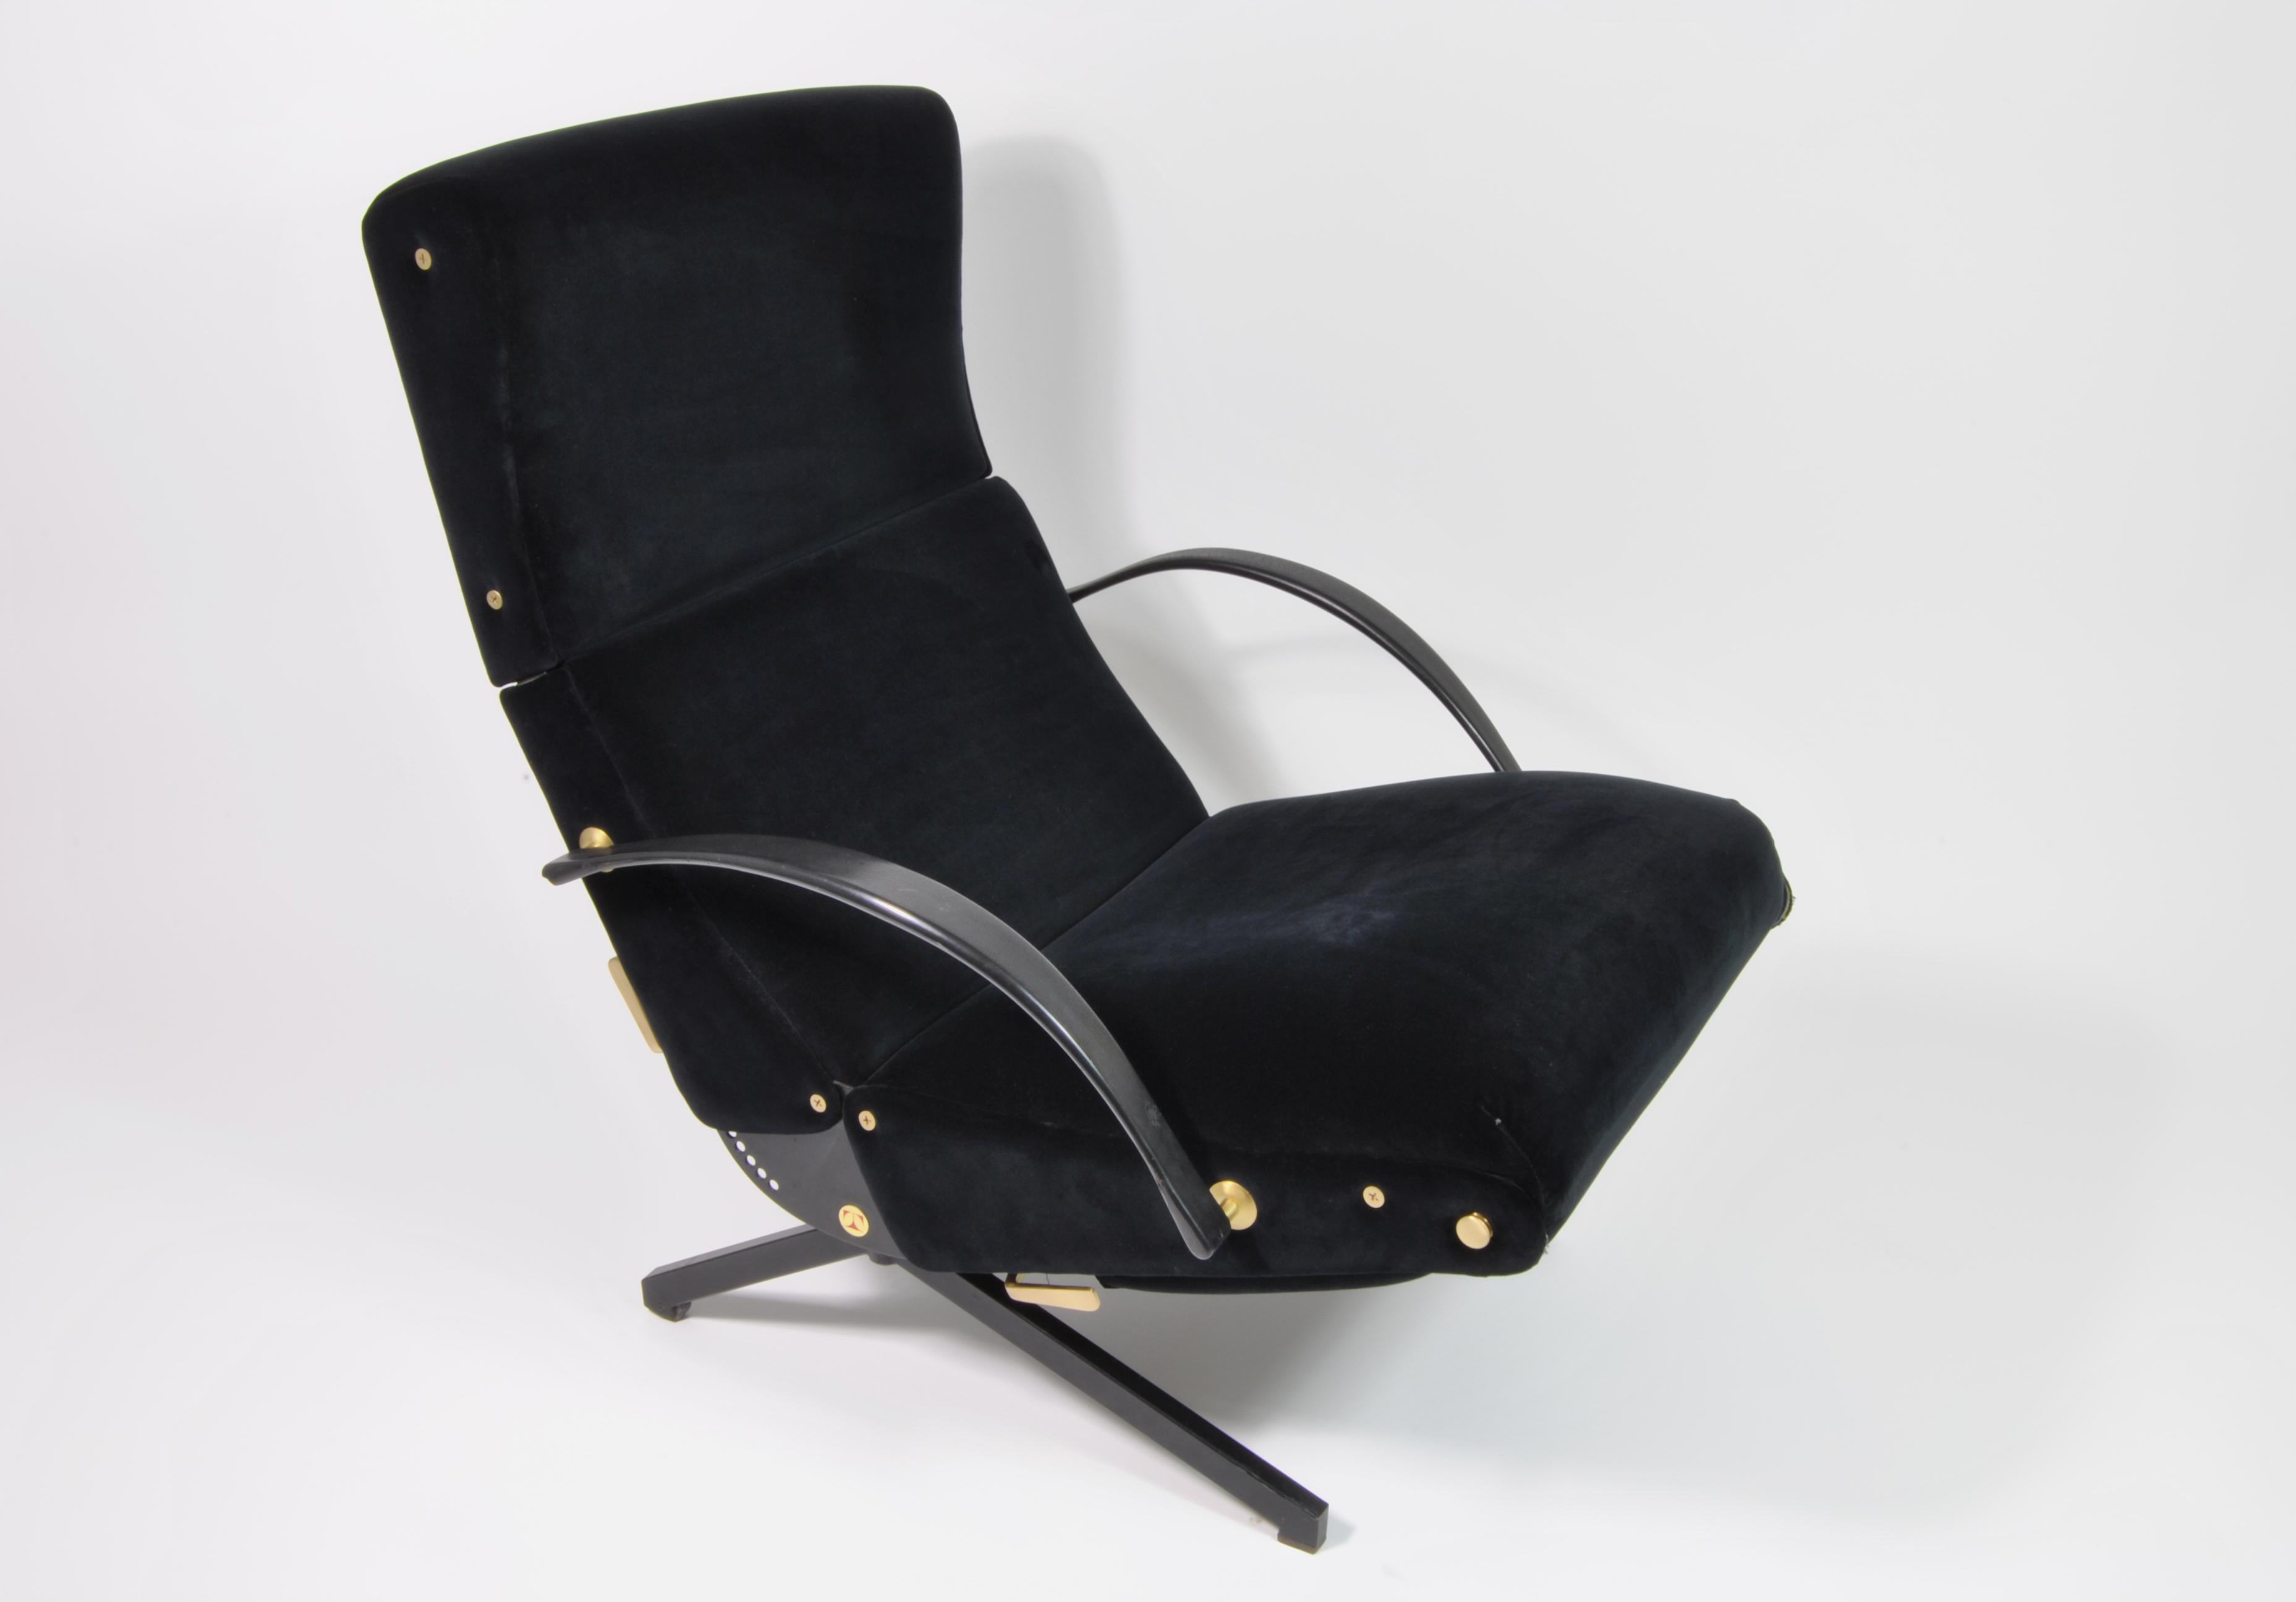 Schöne Chaiselongue P40 aus schwarzem Baumwollsamt, entworfen von Osvaldo Borsani für Tecno, Italien, 1970.
Dieser lange Stuhl ist in sehr gutem Zustand und alle Mechaniken für die verschiedenen Positionen funktionieren noch.
Er hat auch eine